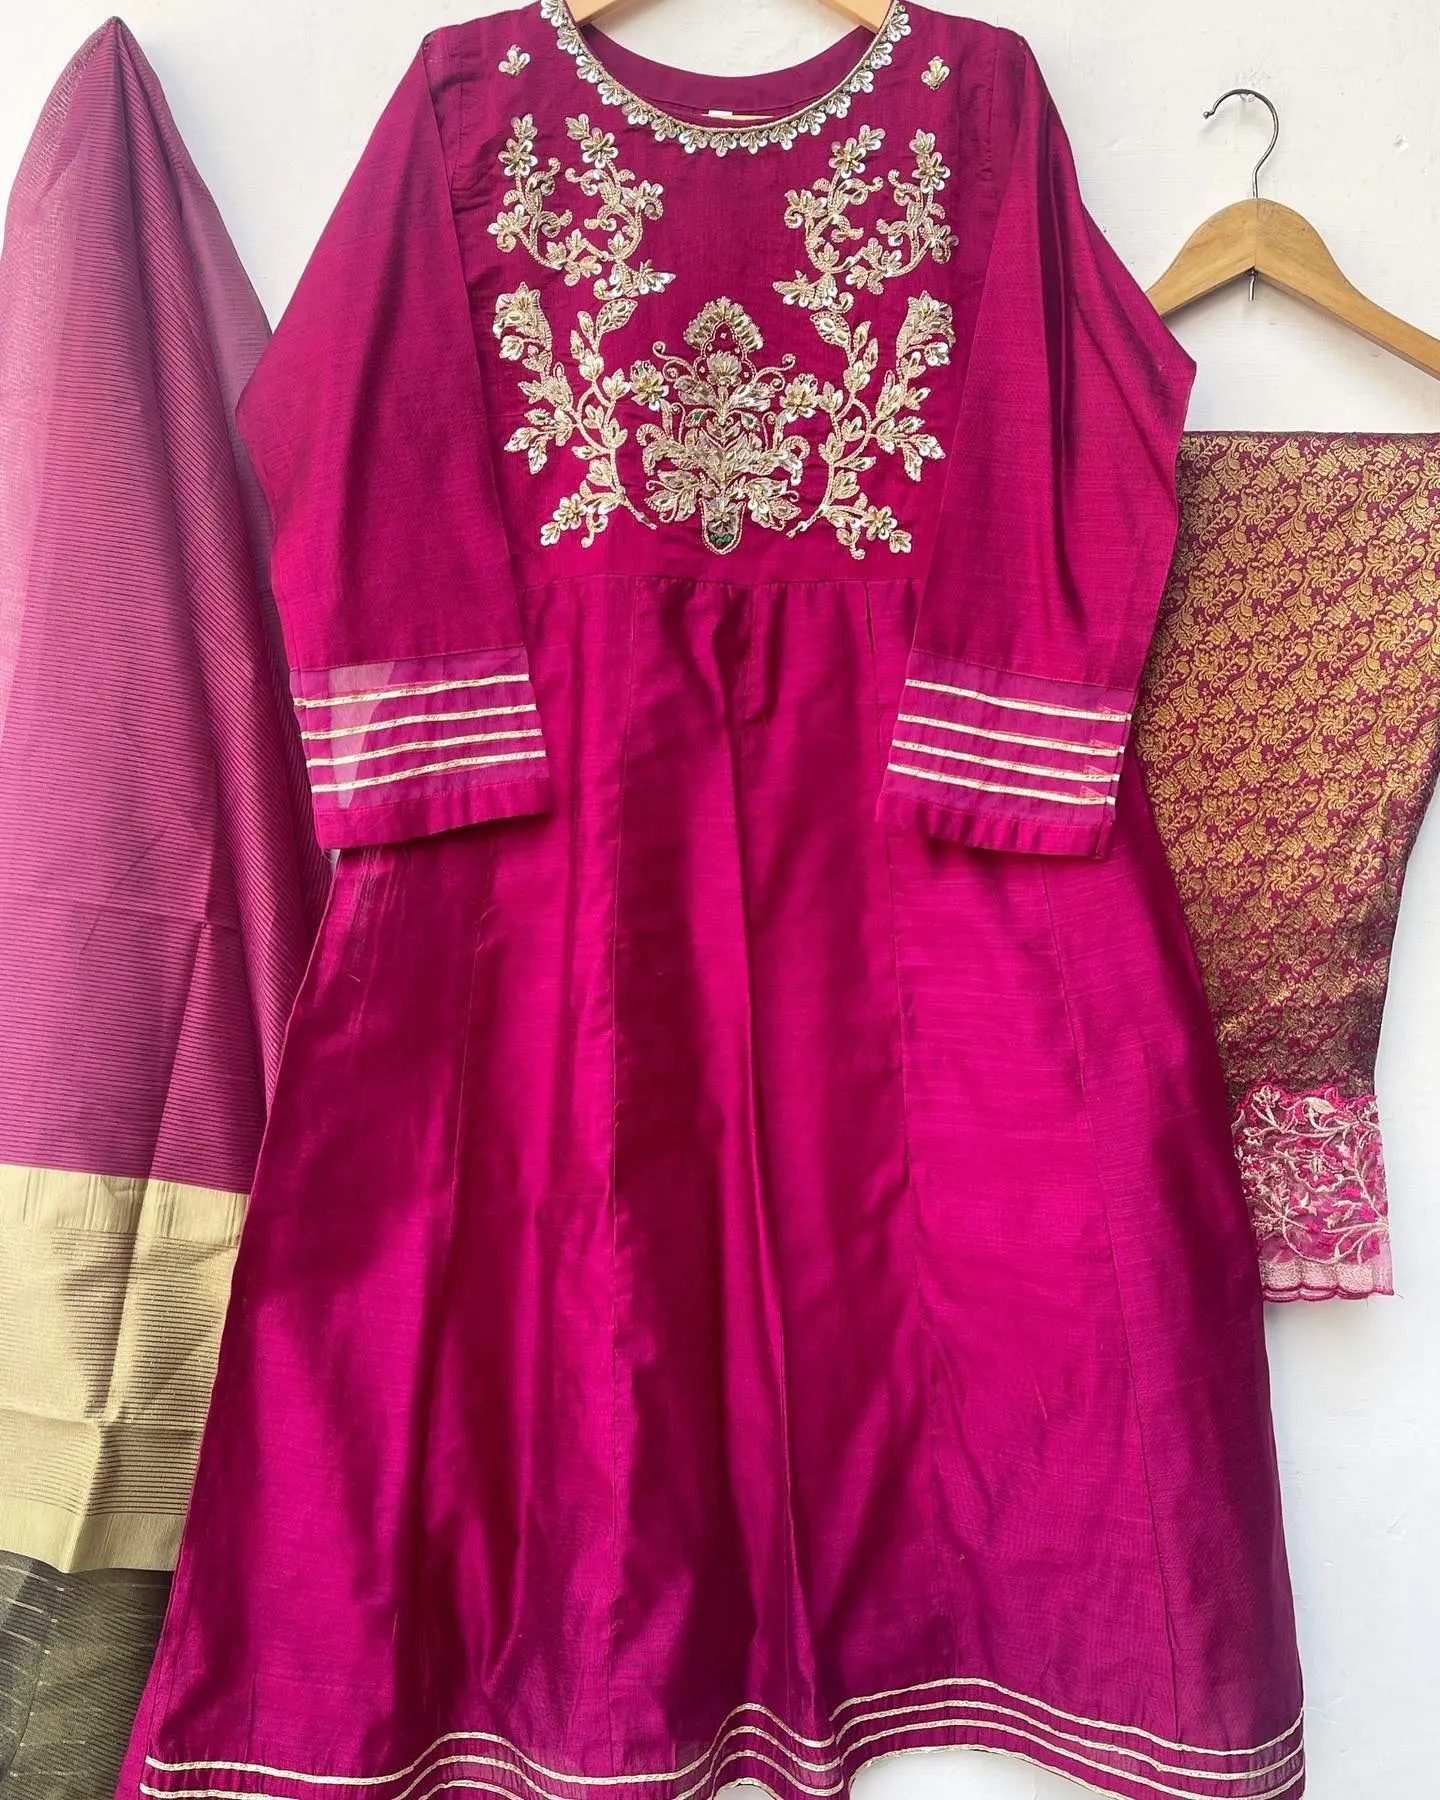 العصرية بزي المرأة النساء الباكستانيات فساتين فاخرة مطرزة فستان 3 قطعة دعوى ل عيد ارتداء